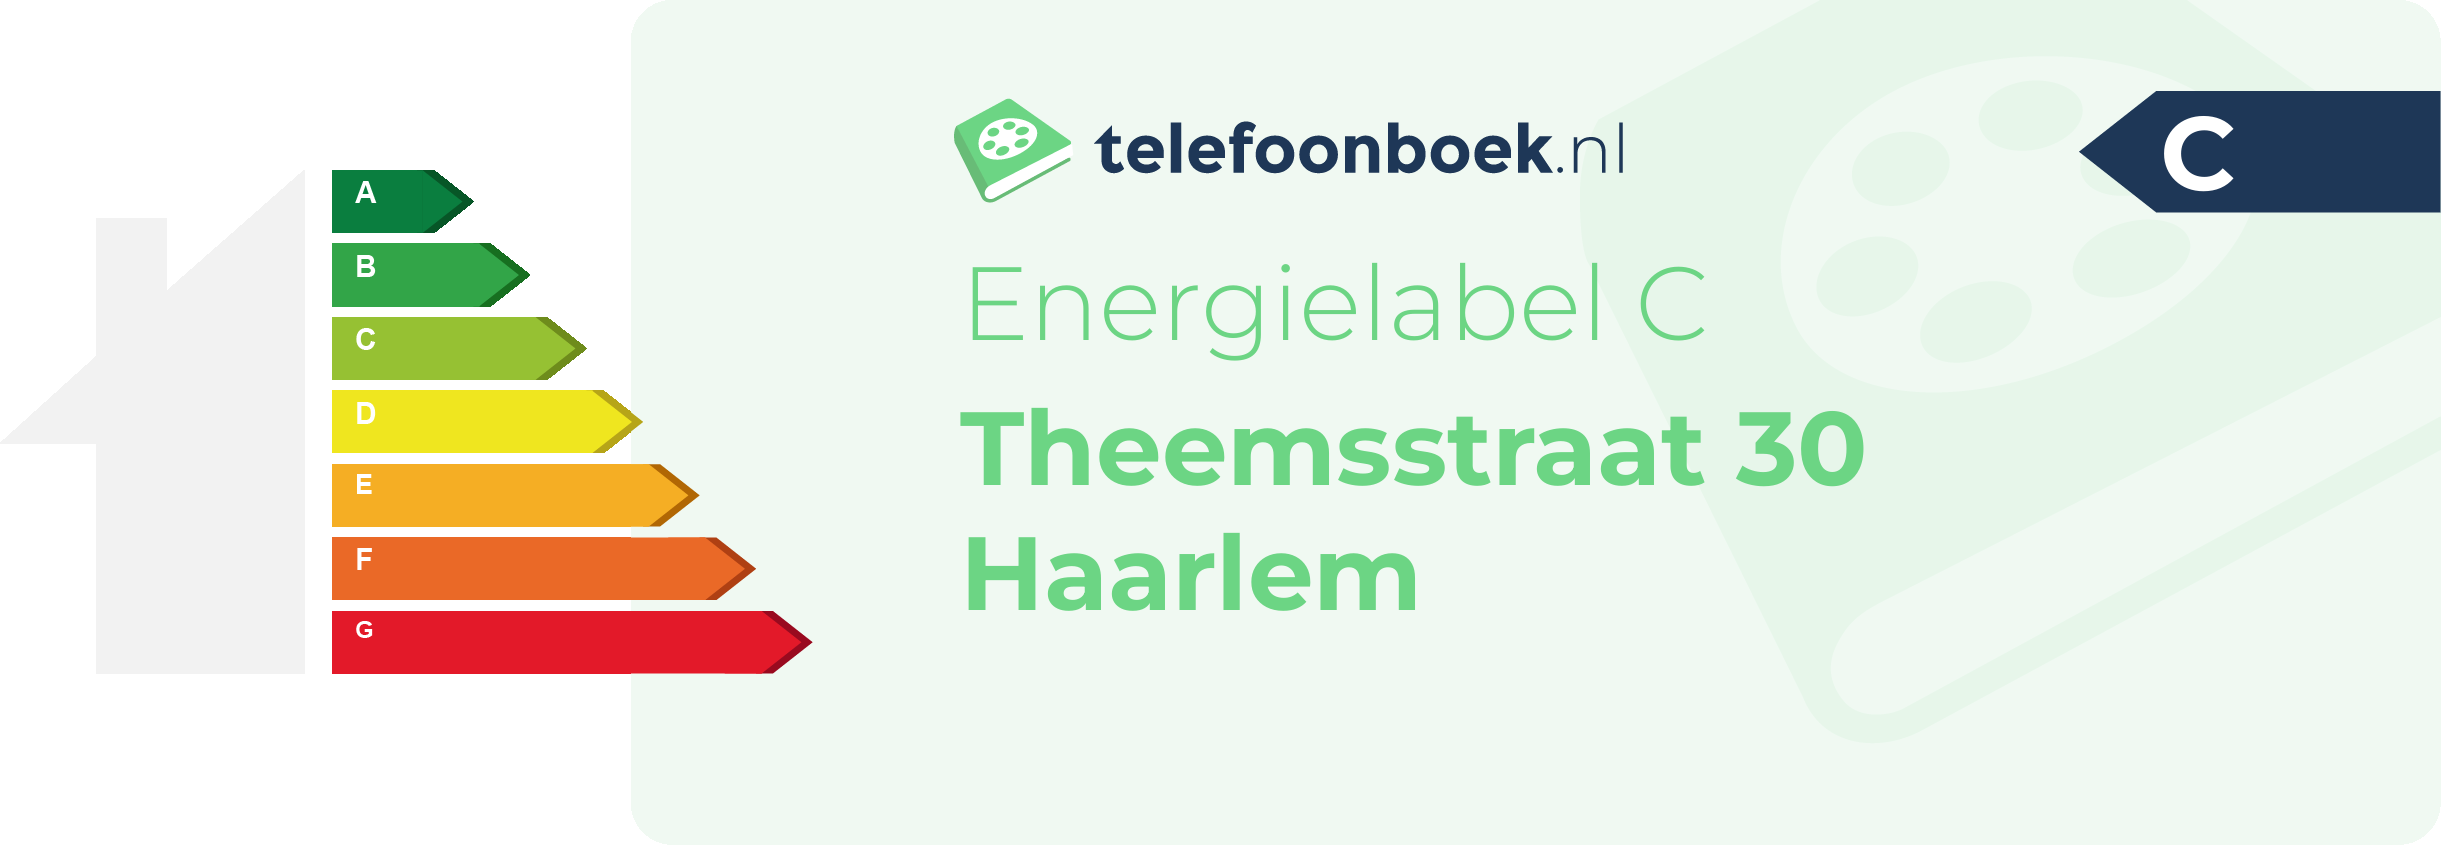 Energielabel Theemsstraat 30 Haarlem